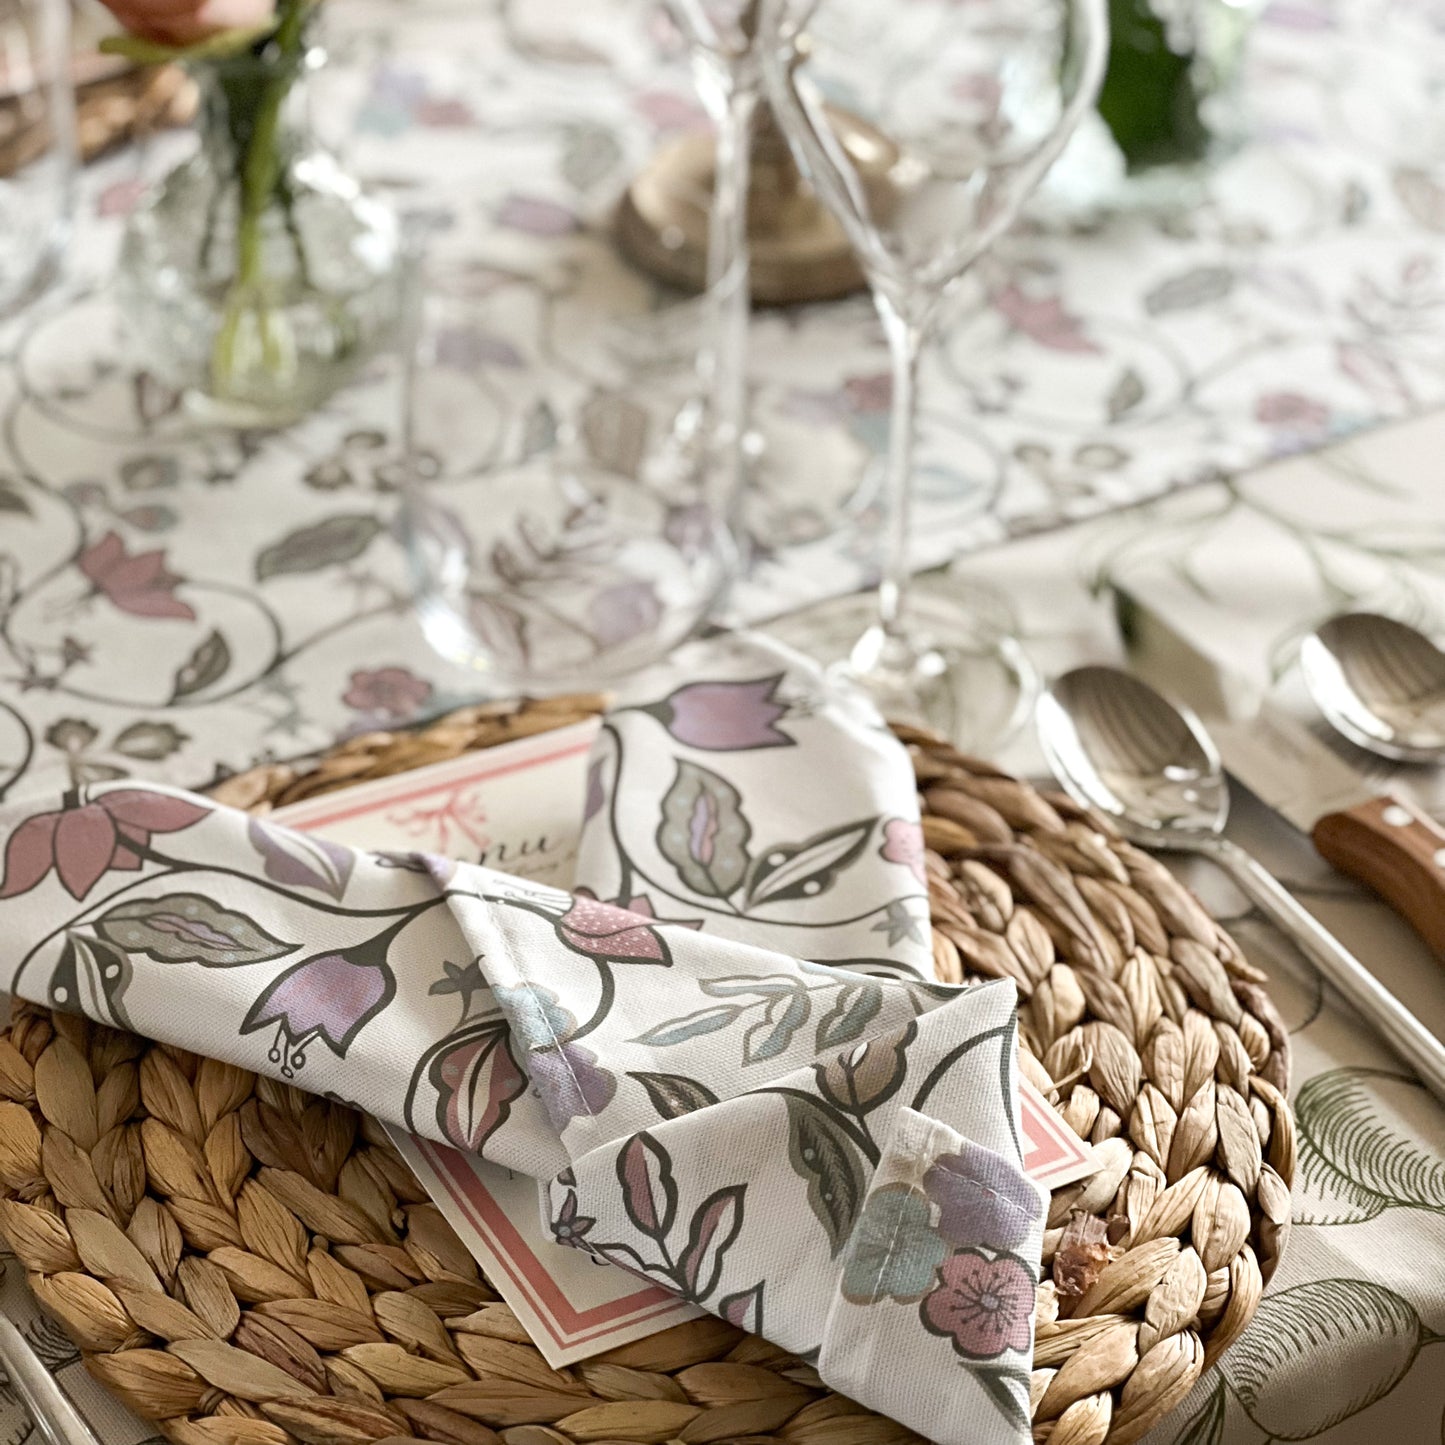 Vintage Floral Table Runner - Lavender